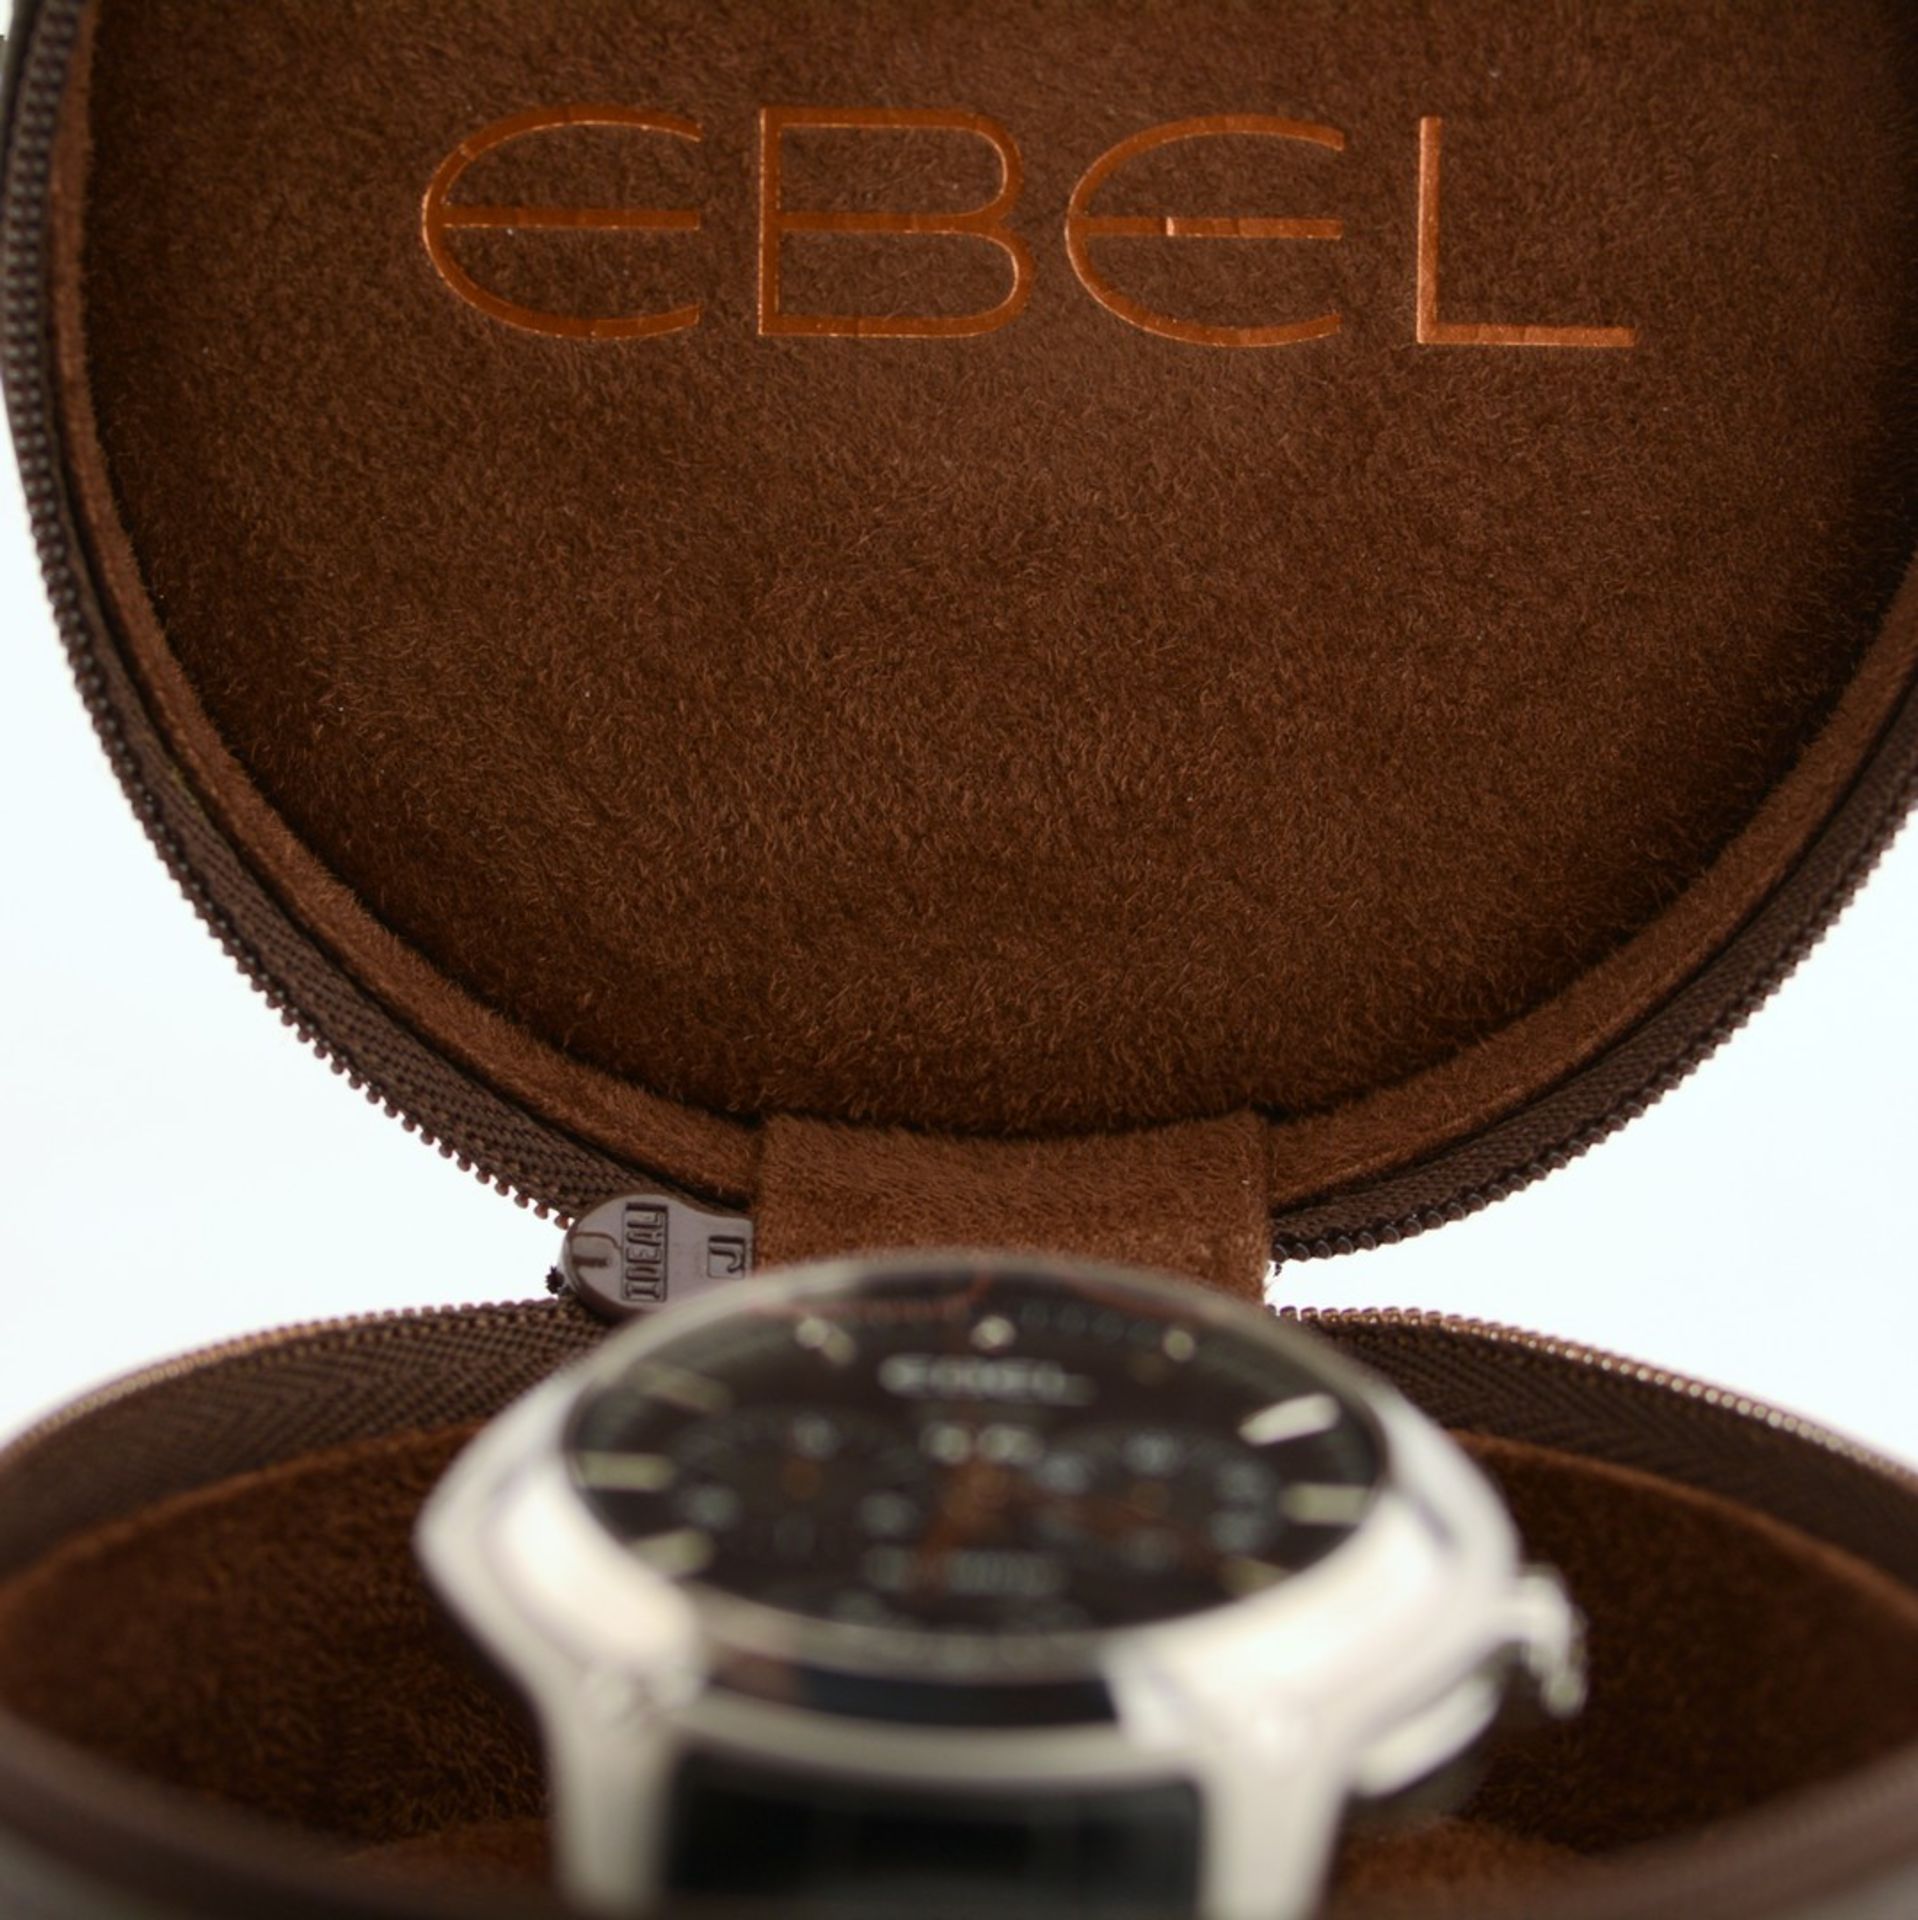 Ebel / Hexagon Chronometer - Gentlemen's Steel Wristwatch - Image 4 of 13